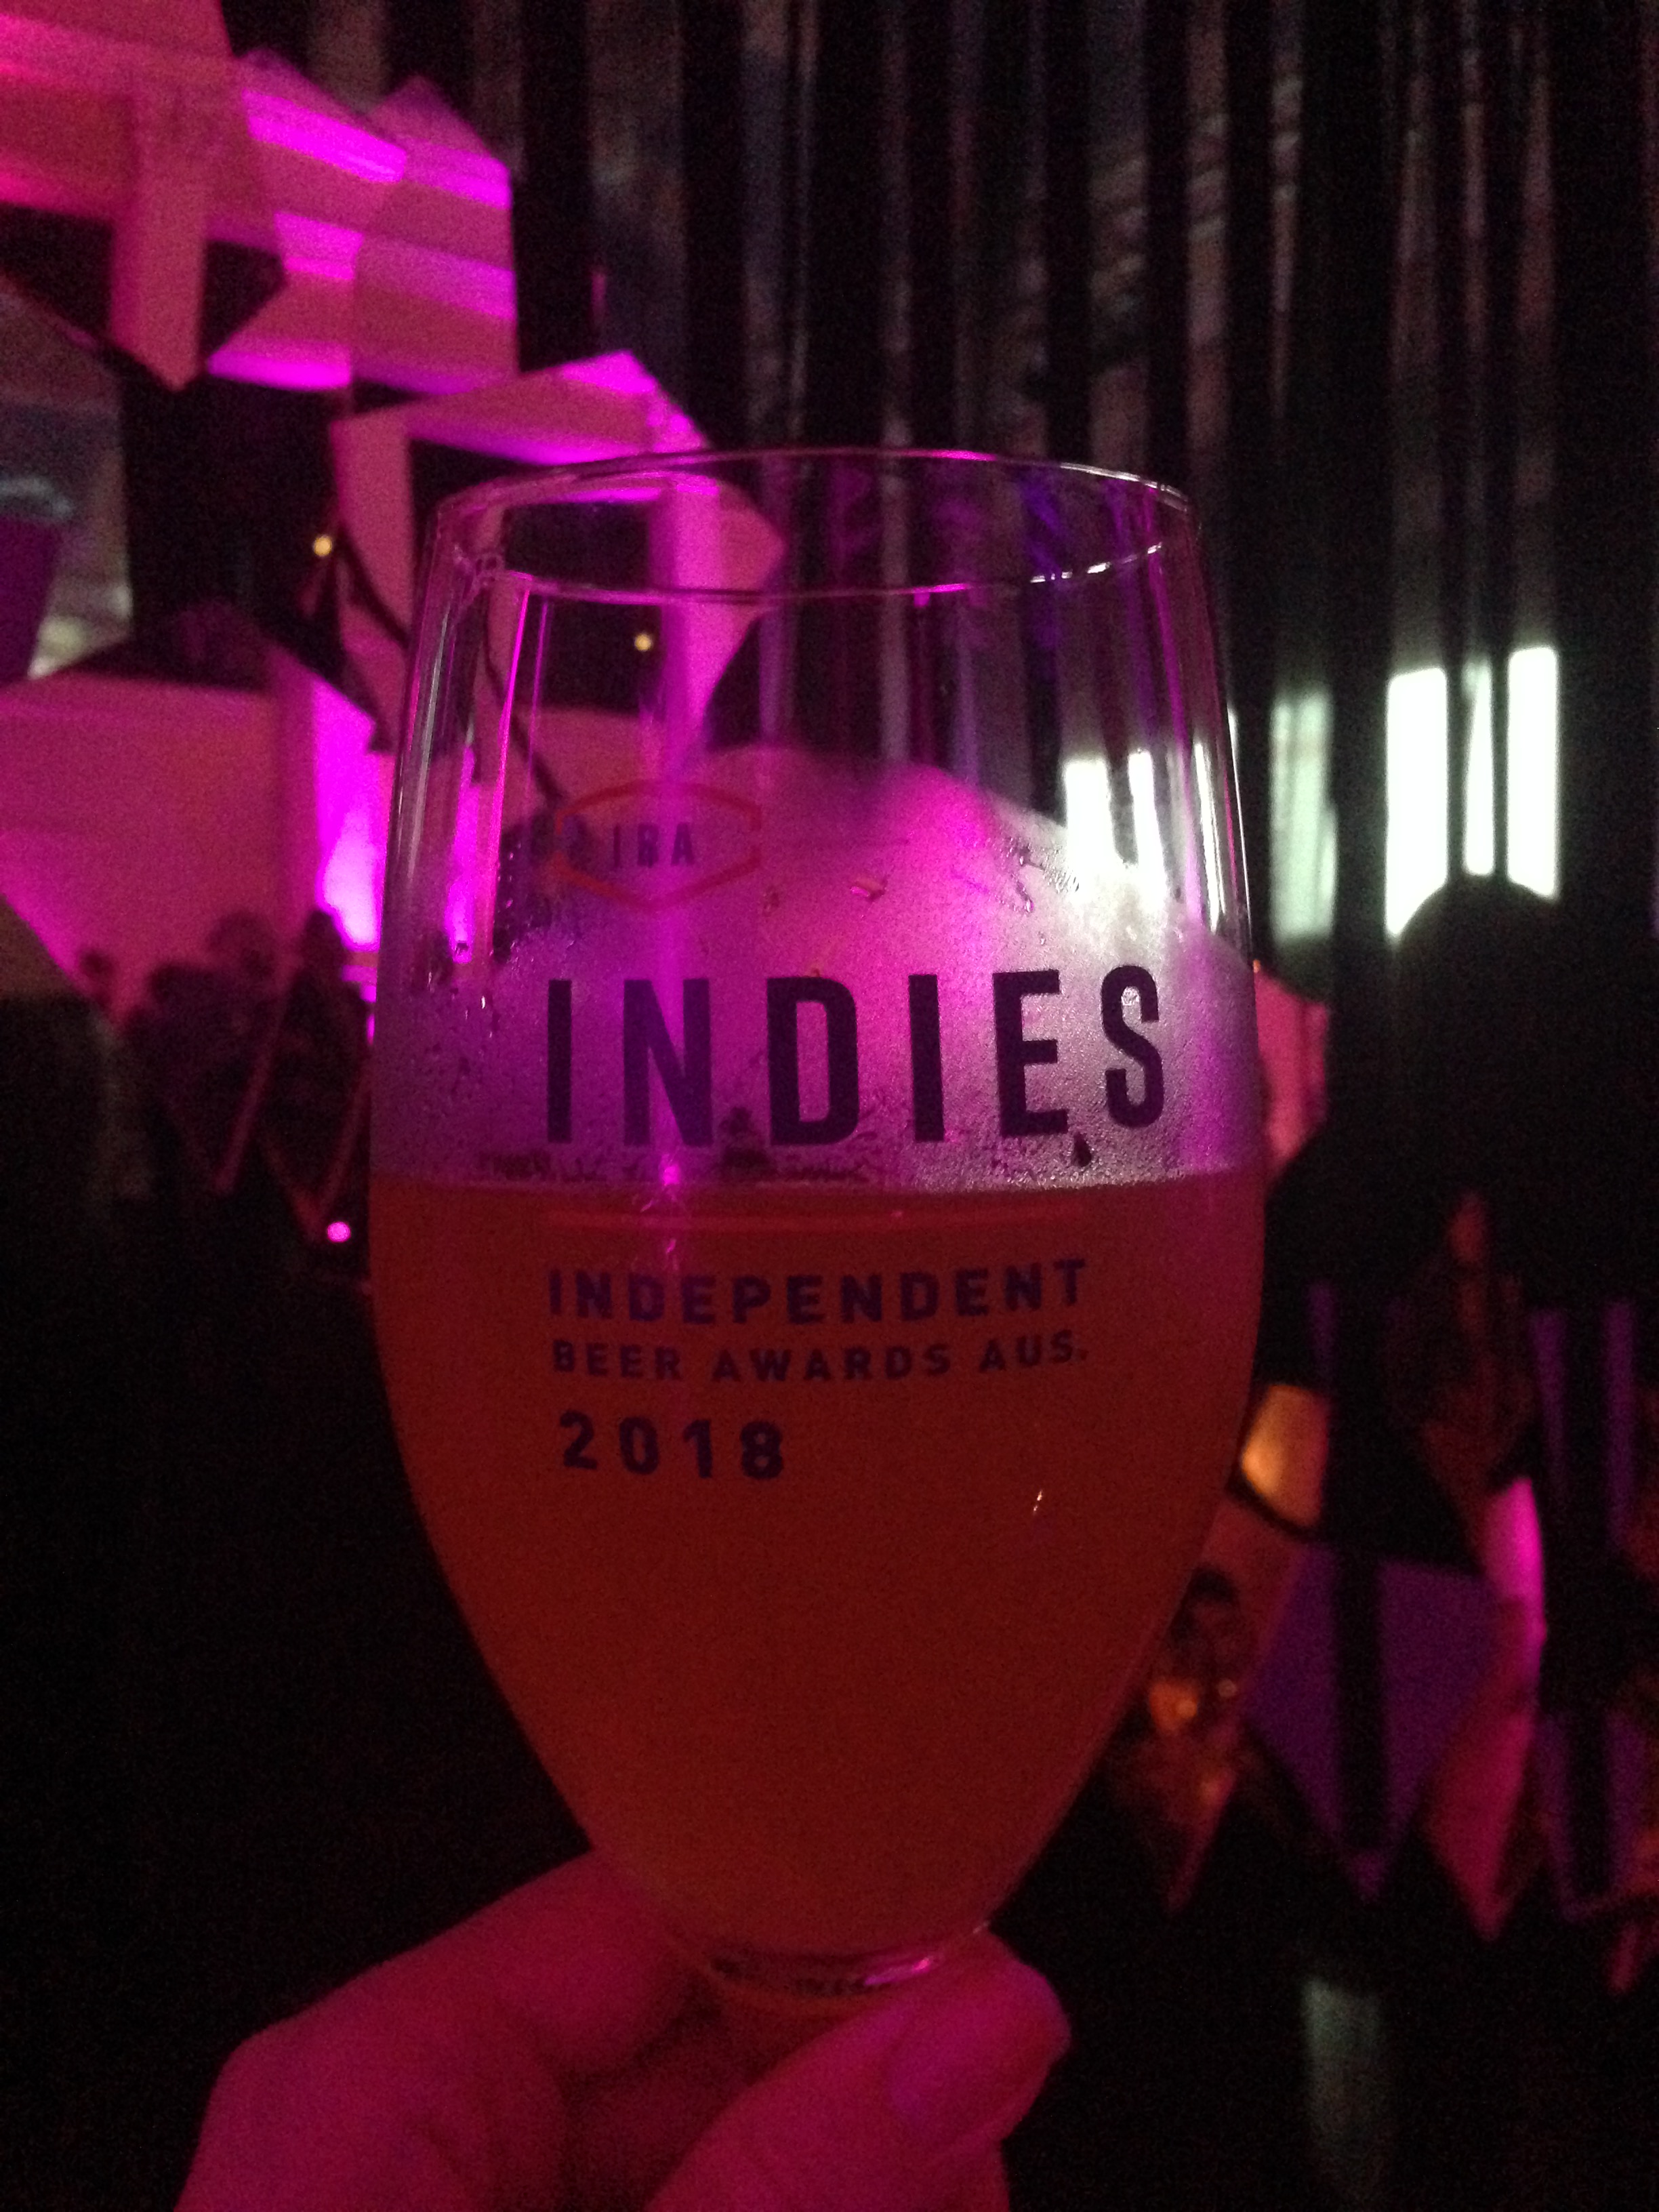 Indies BrewCon craft beer awards